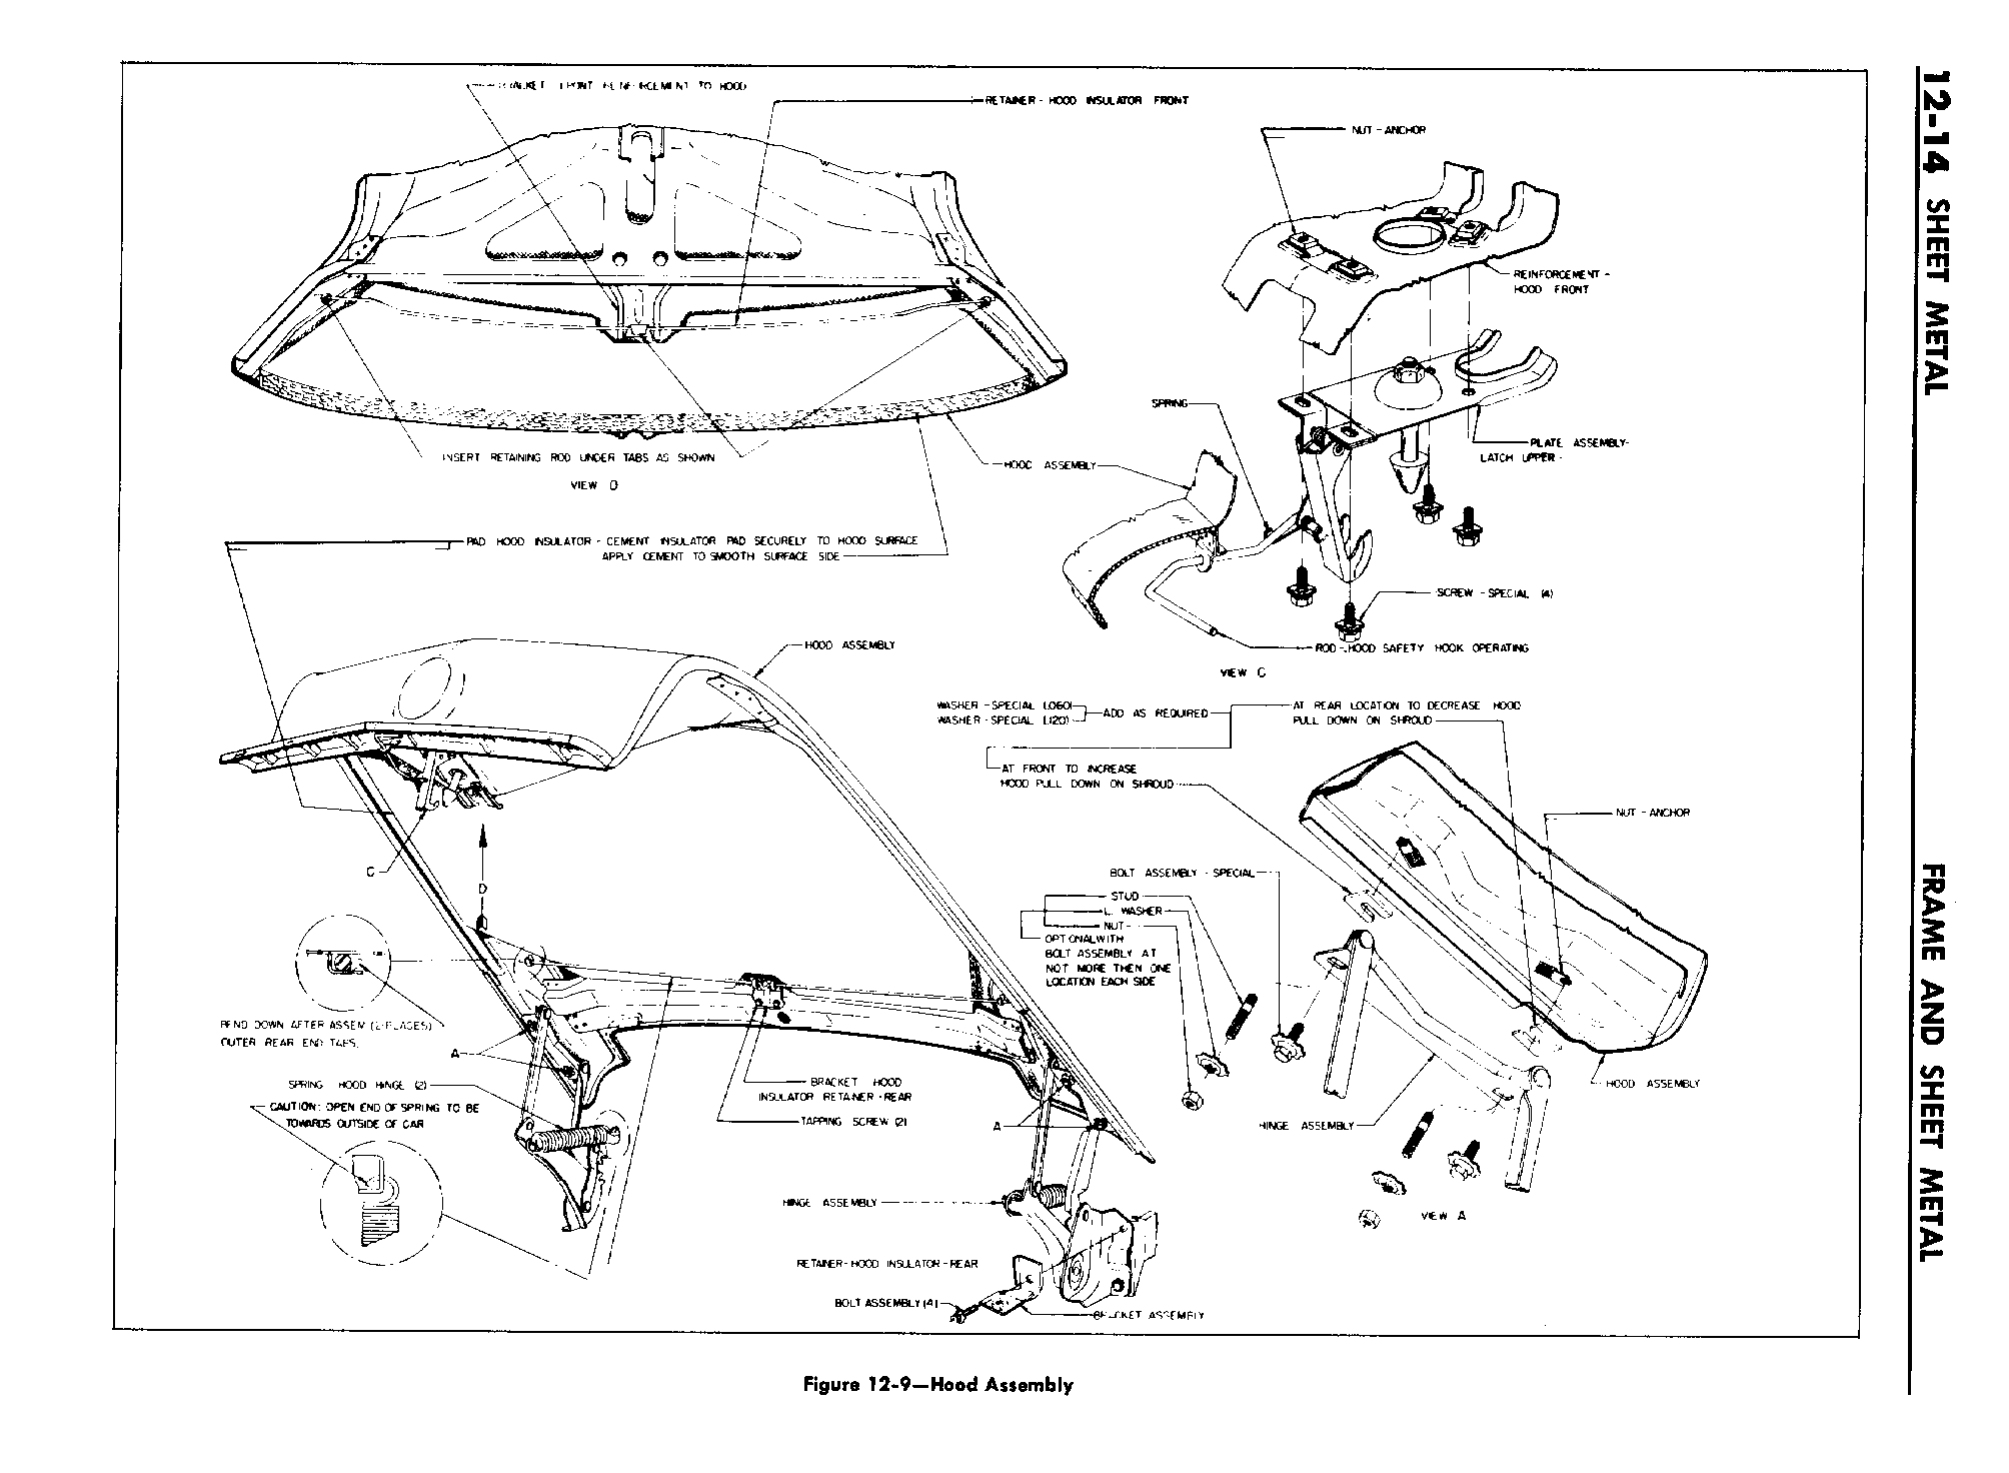 n_13 1958 Buick Shop Manual - Frame & Sheet Metal_14.jpg